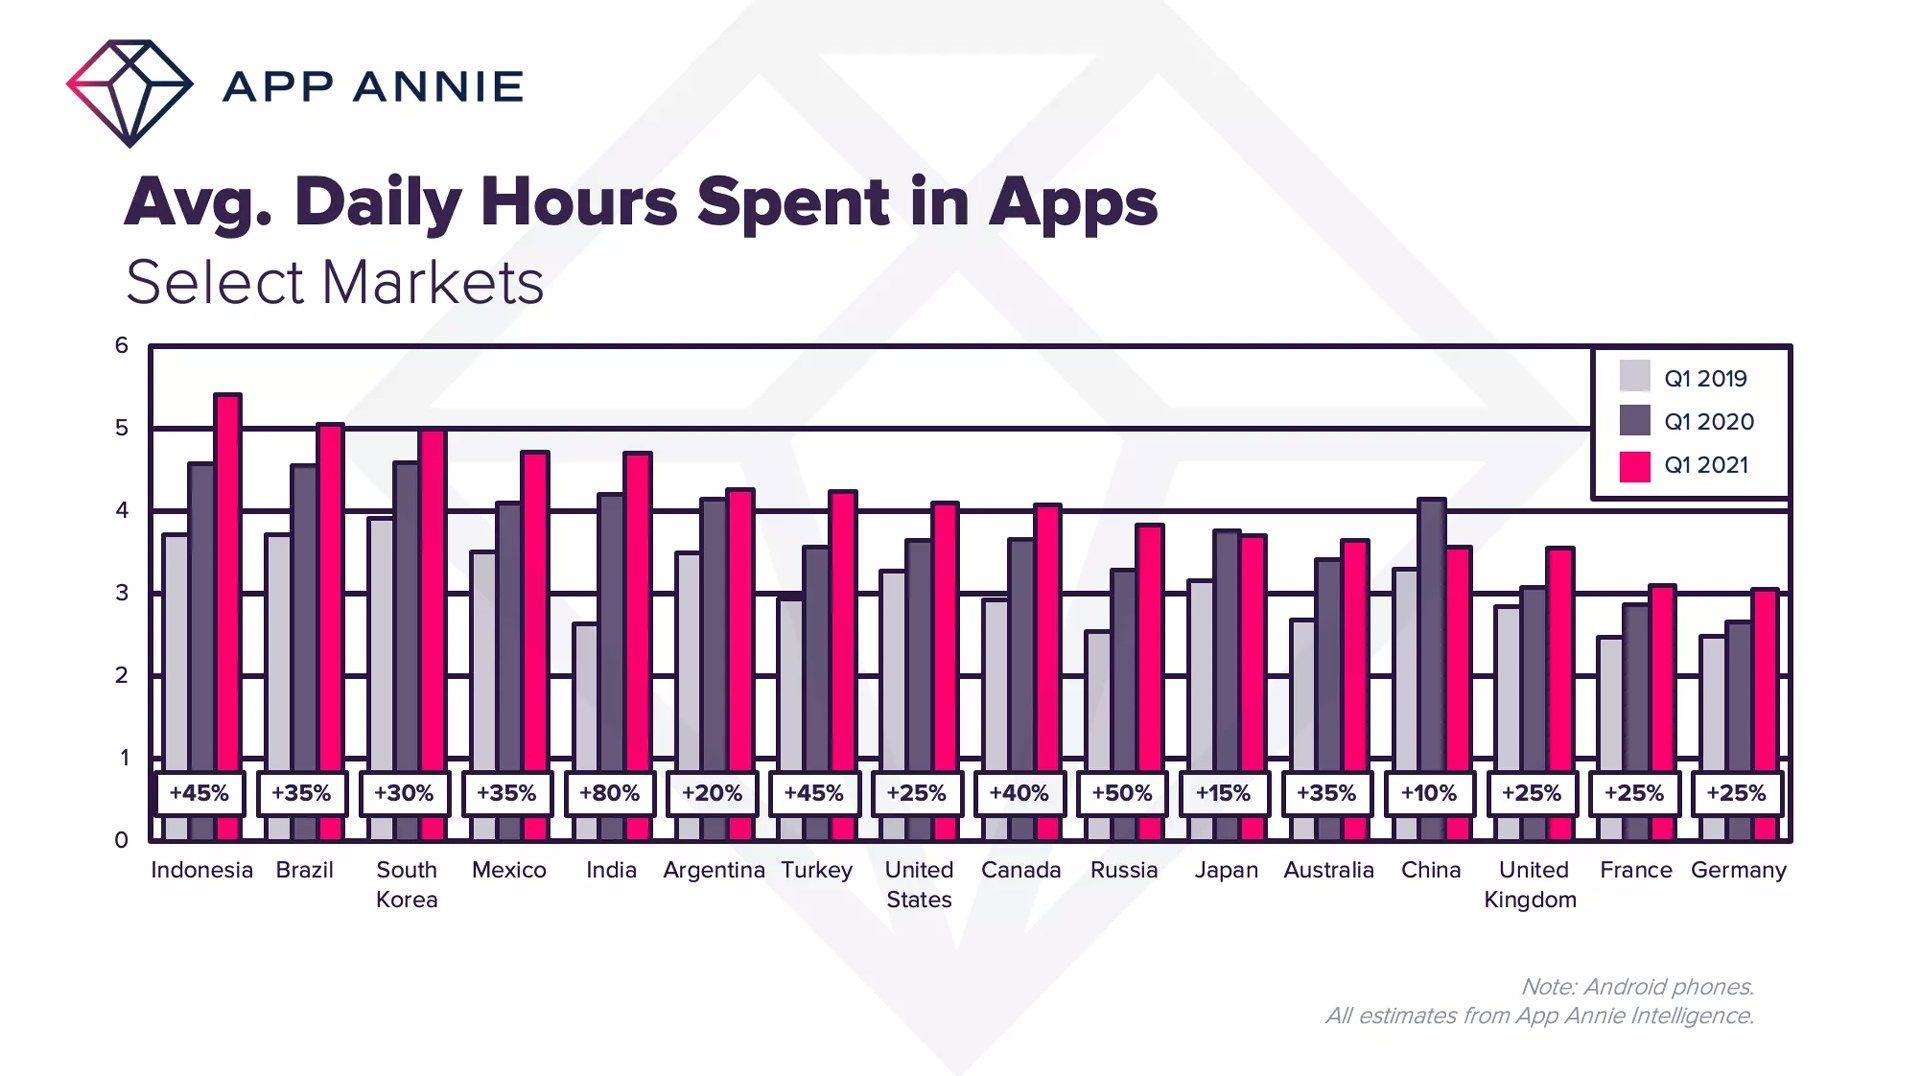 میانگین استفاده روزانه از اپلیکیشن به ۴٫۲ ساعت رسید